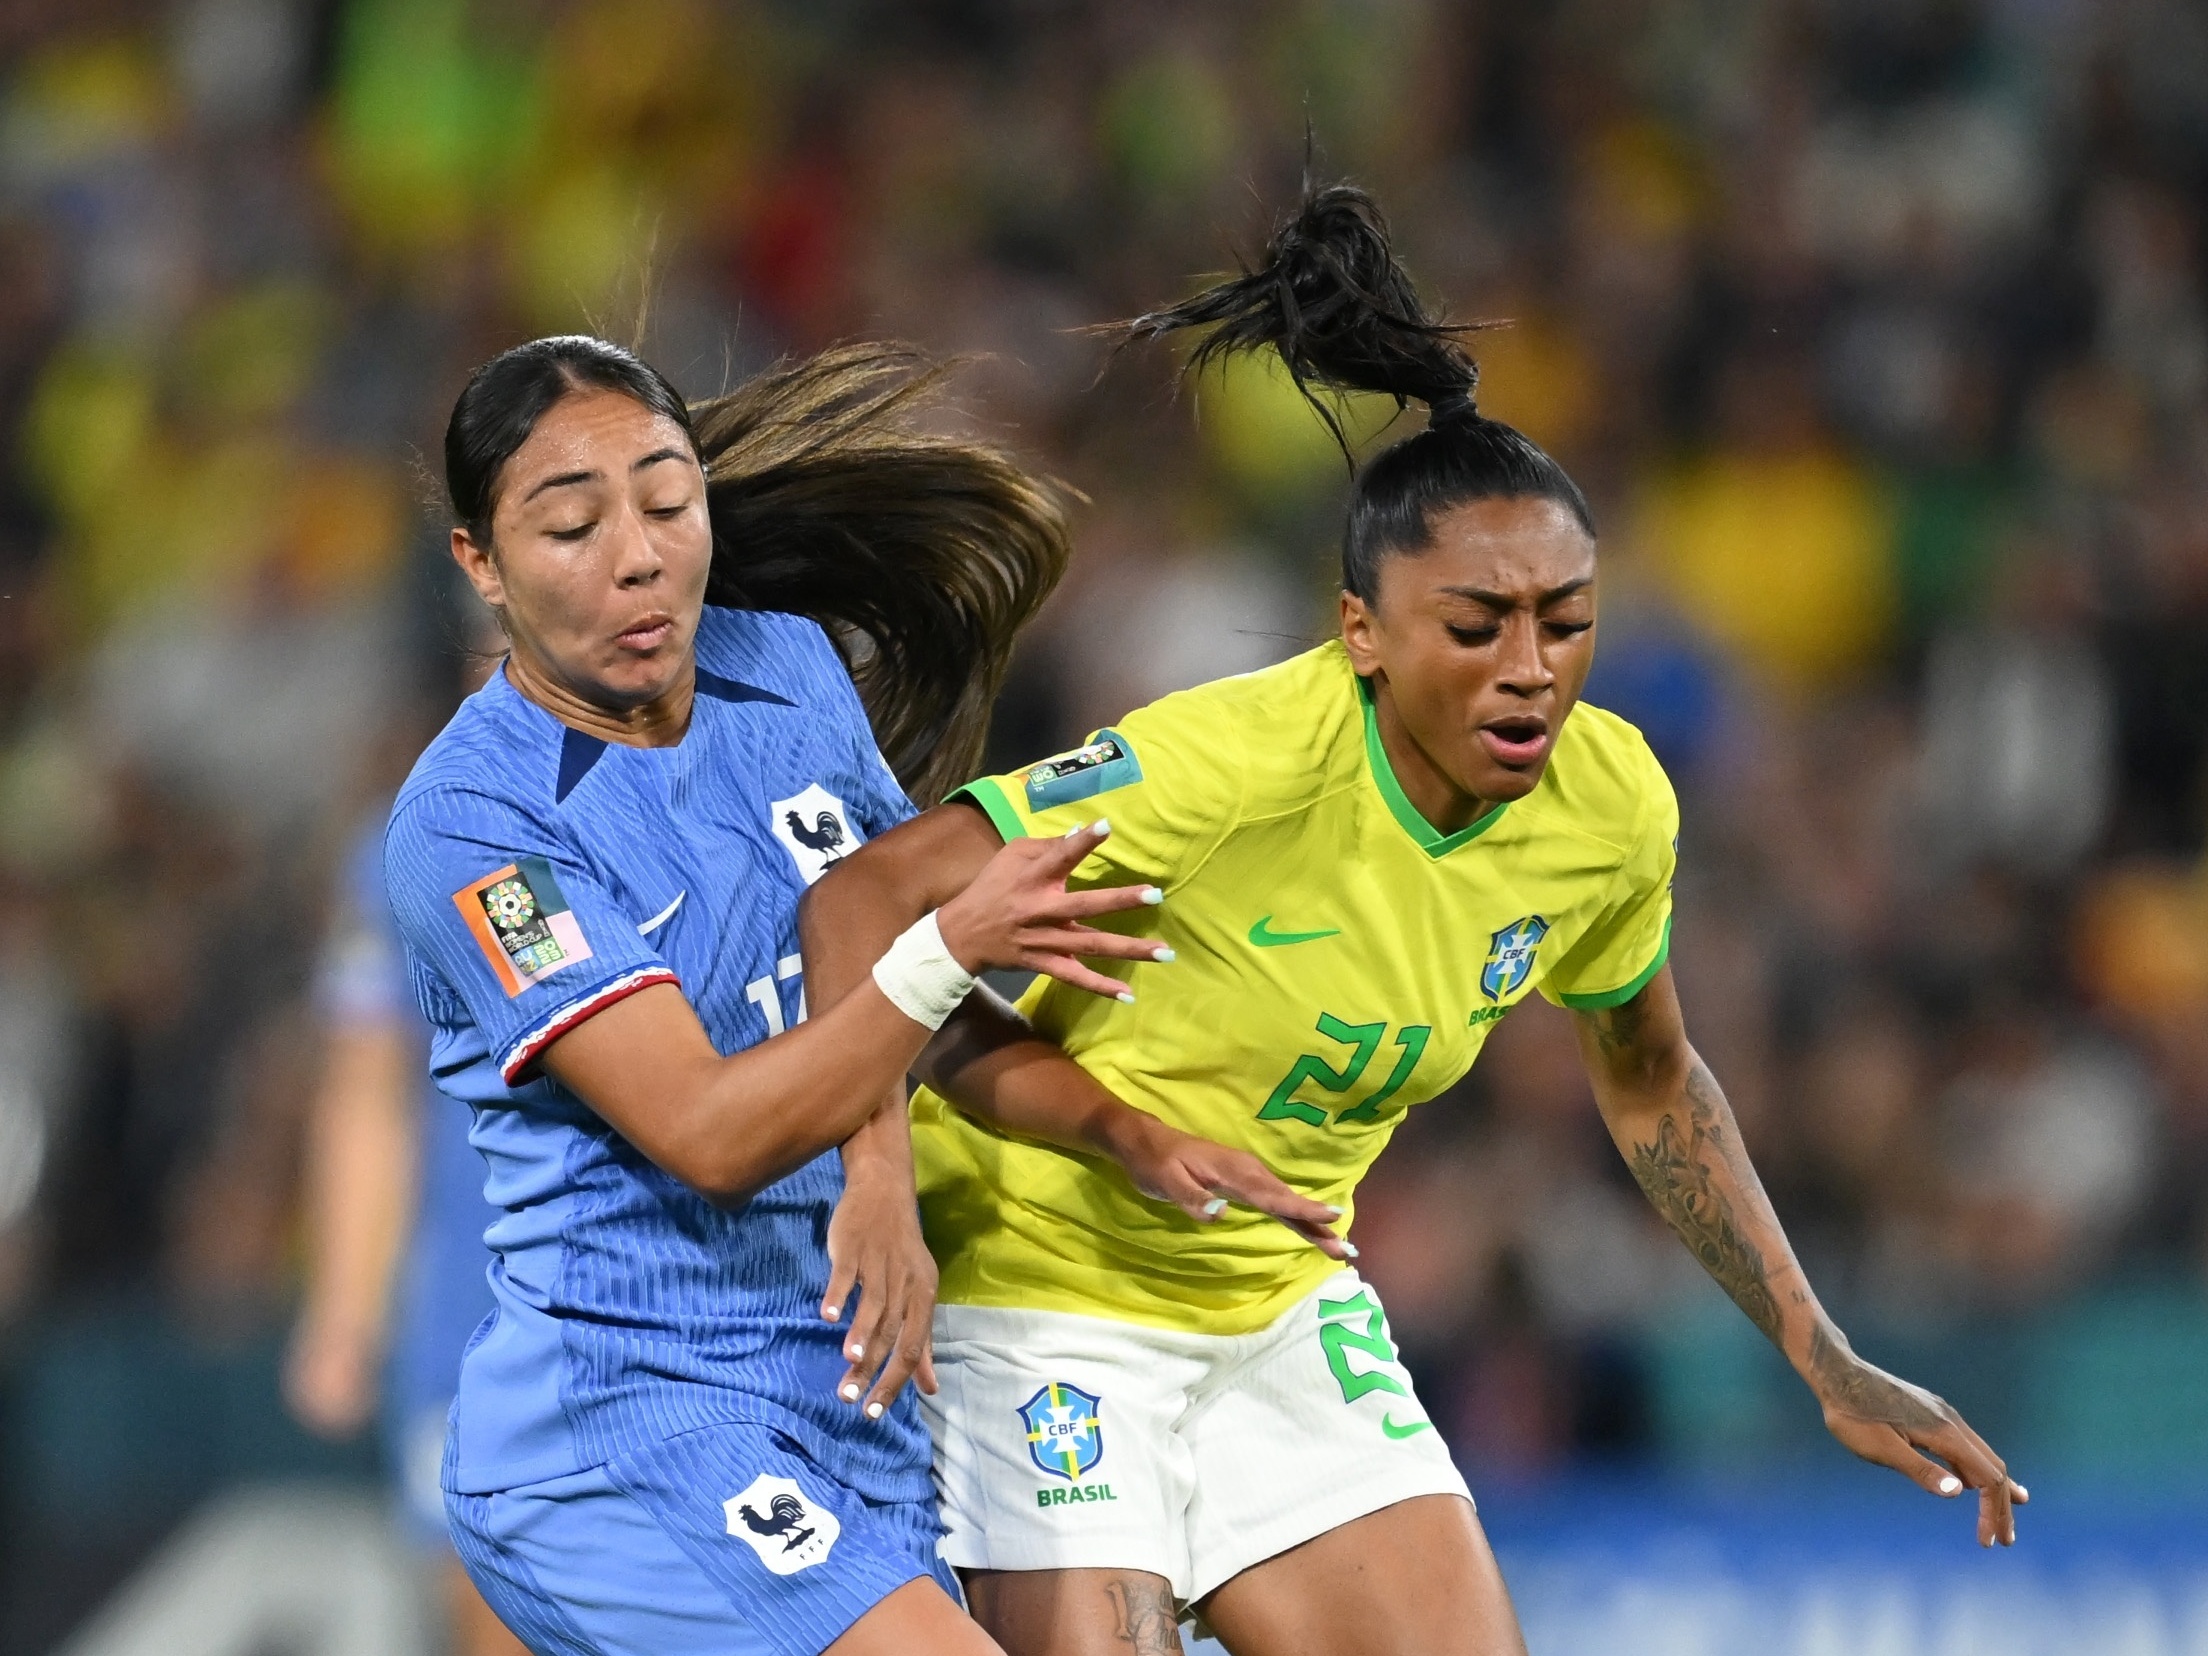 PRÓXIMO JOGO DO BRASIL: veja data e horário de quando será o próximo jogo  do Brasil na Copa do Mundo feminina